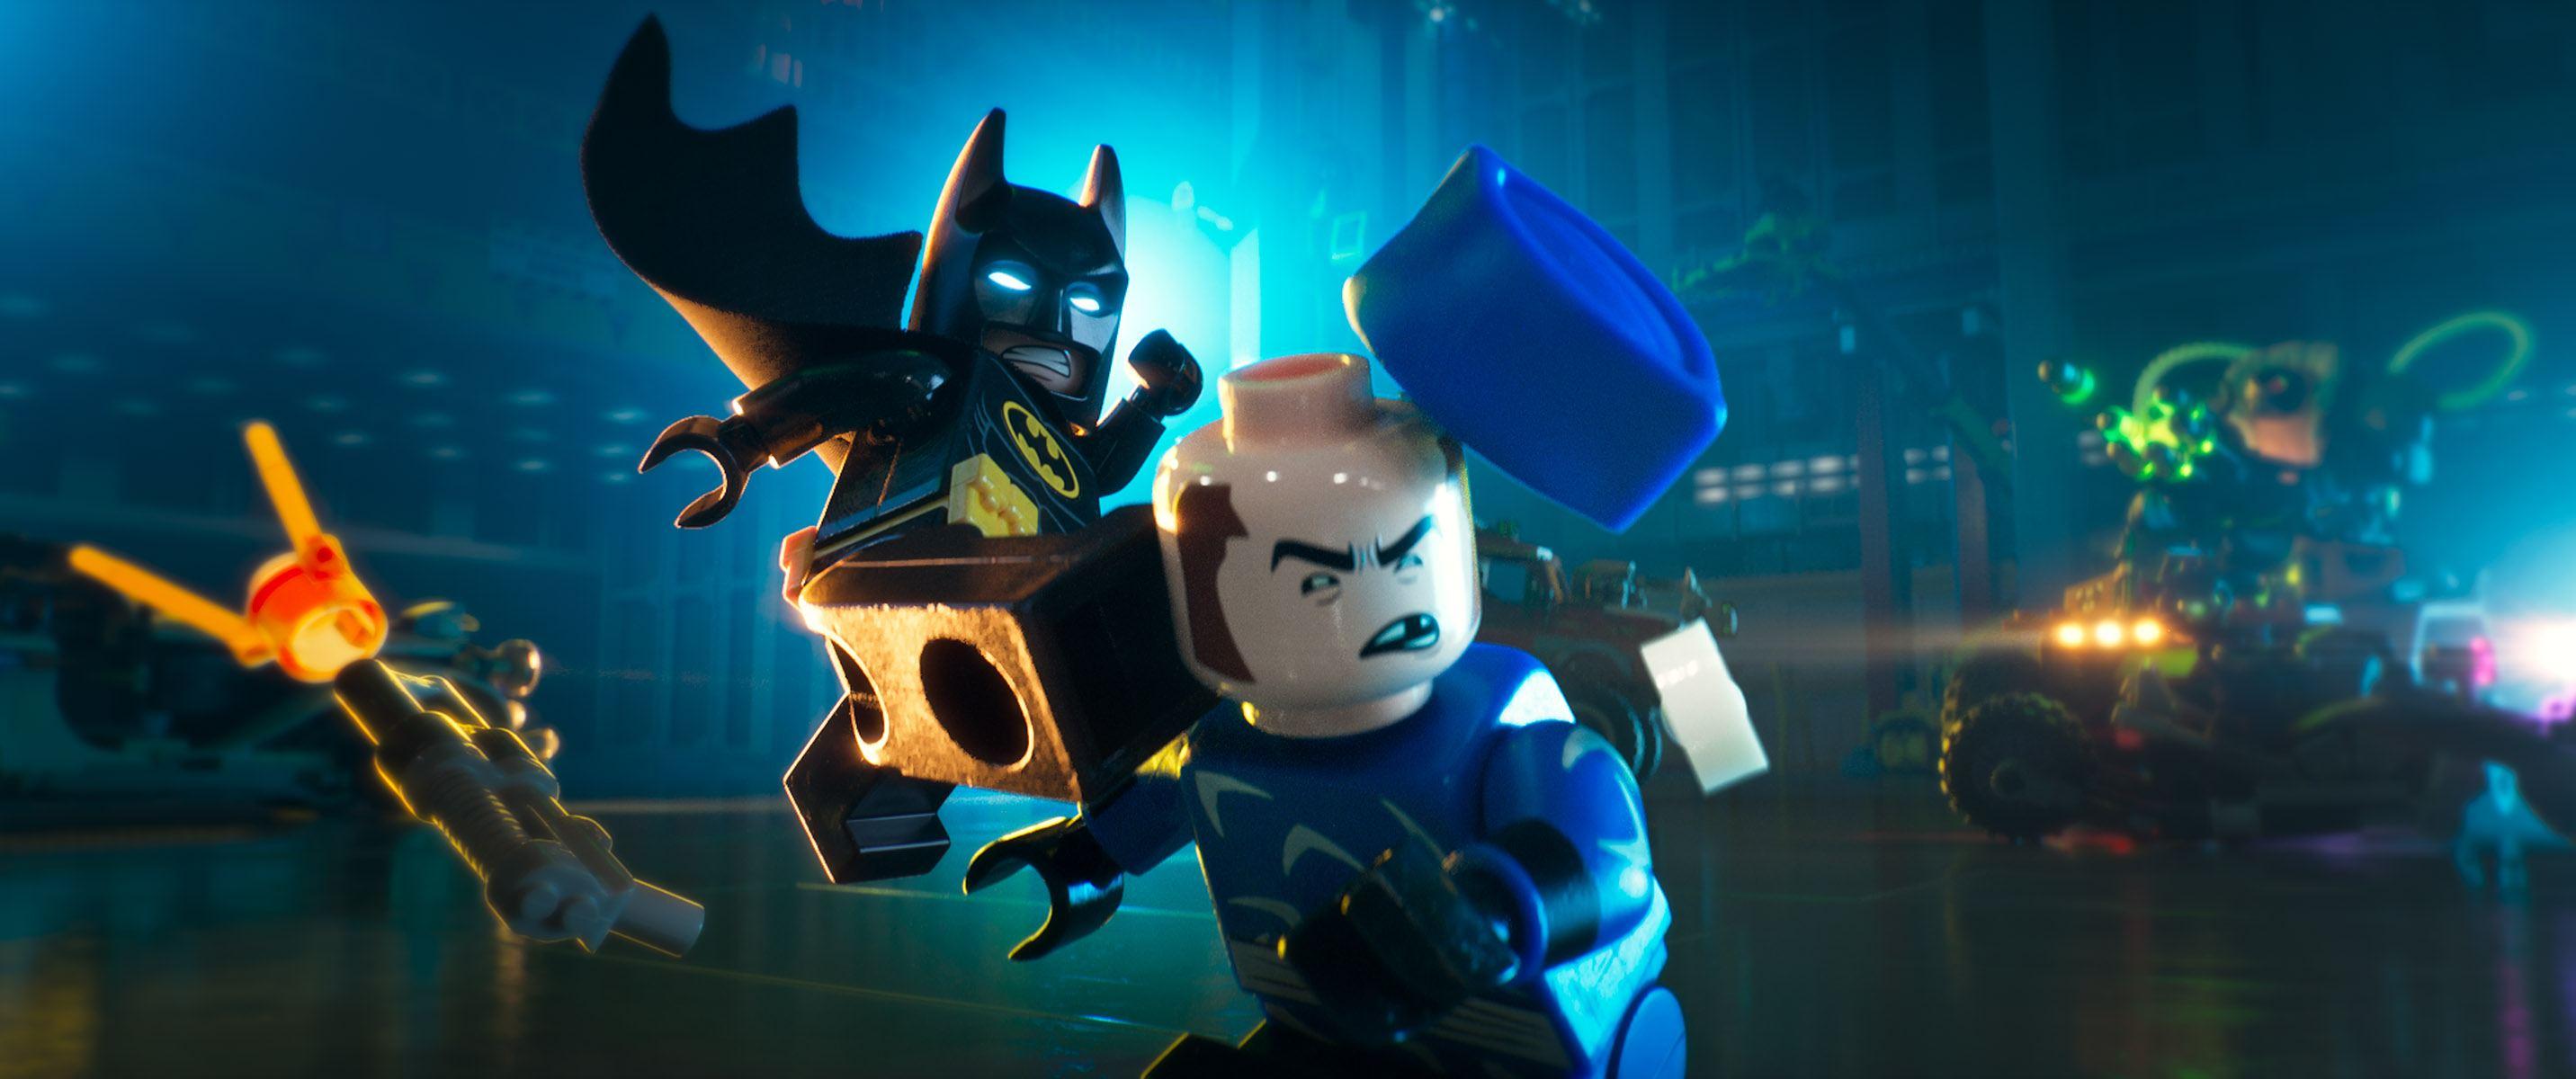 Lego Batman Fight Wallpaper